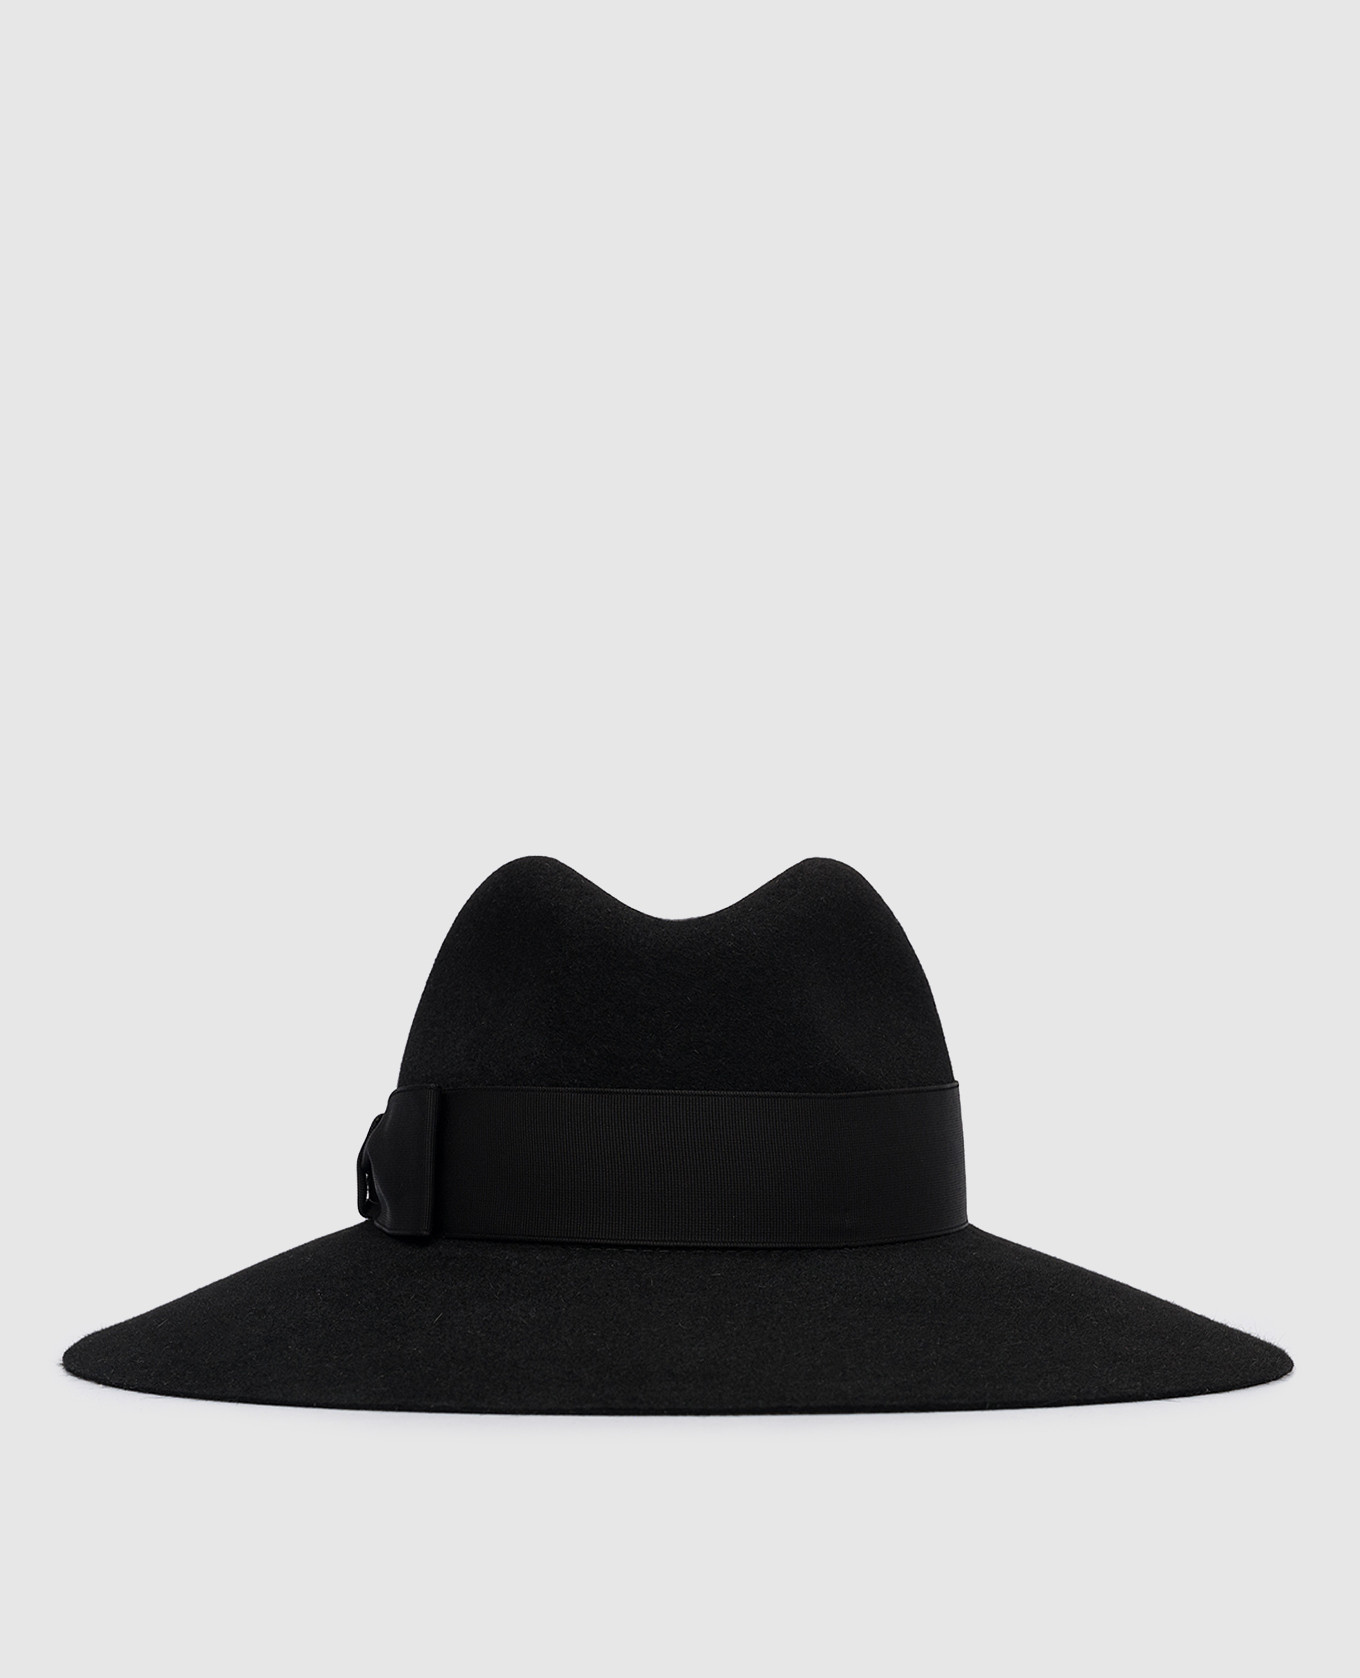 Sophie's black hat